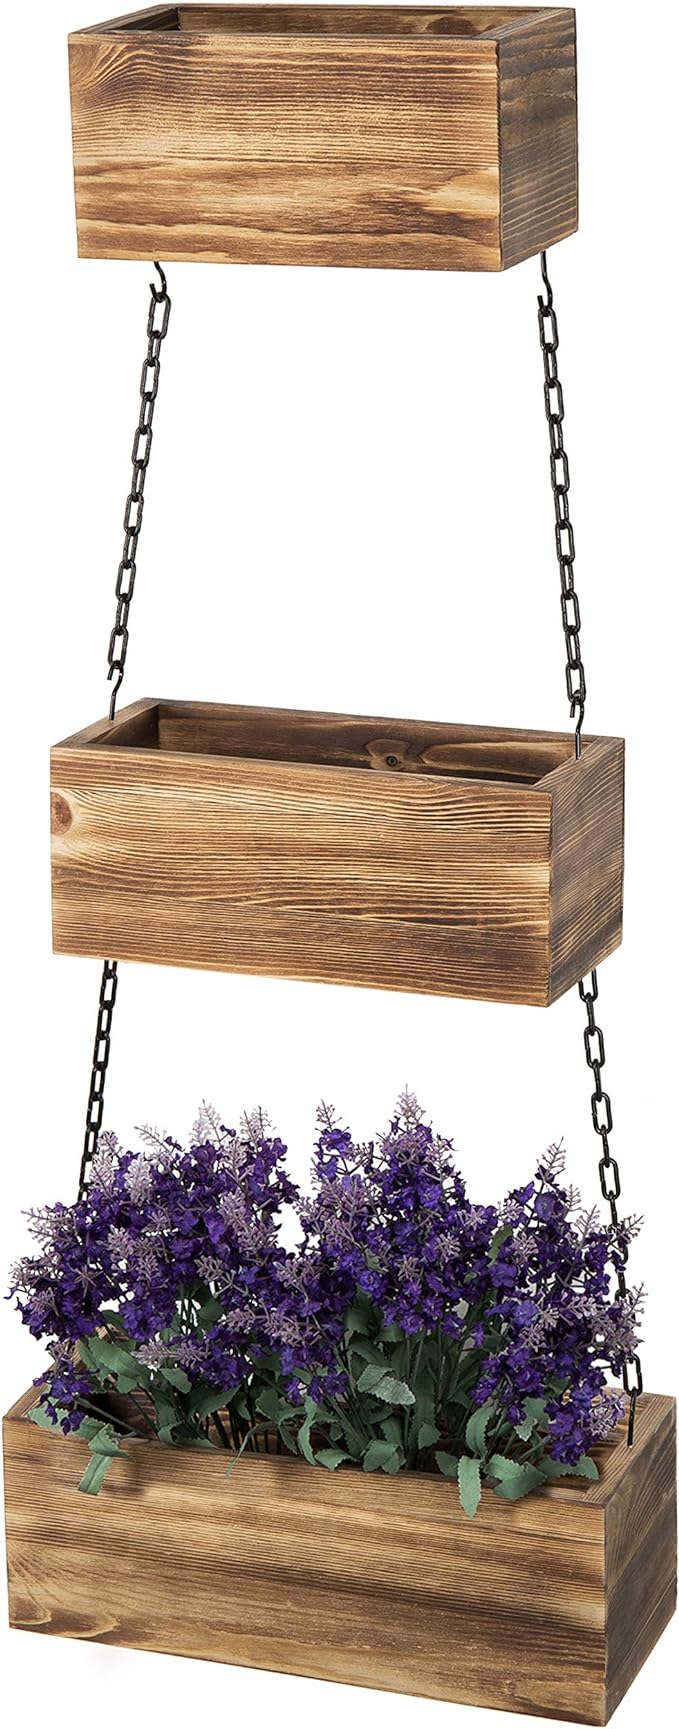 hanging indoor wooden planter box